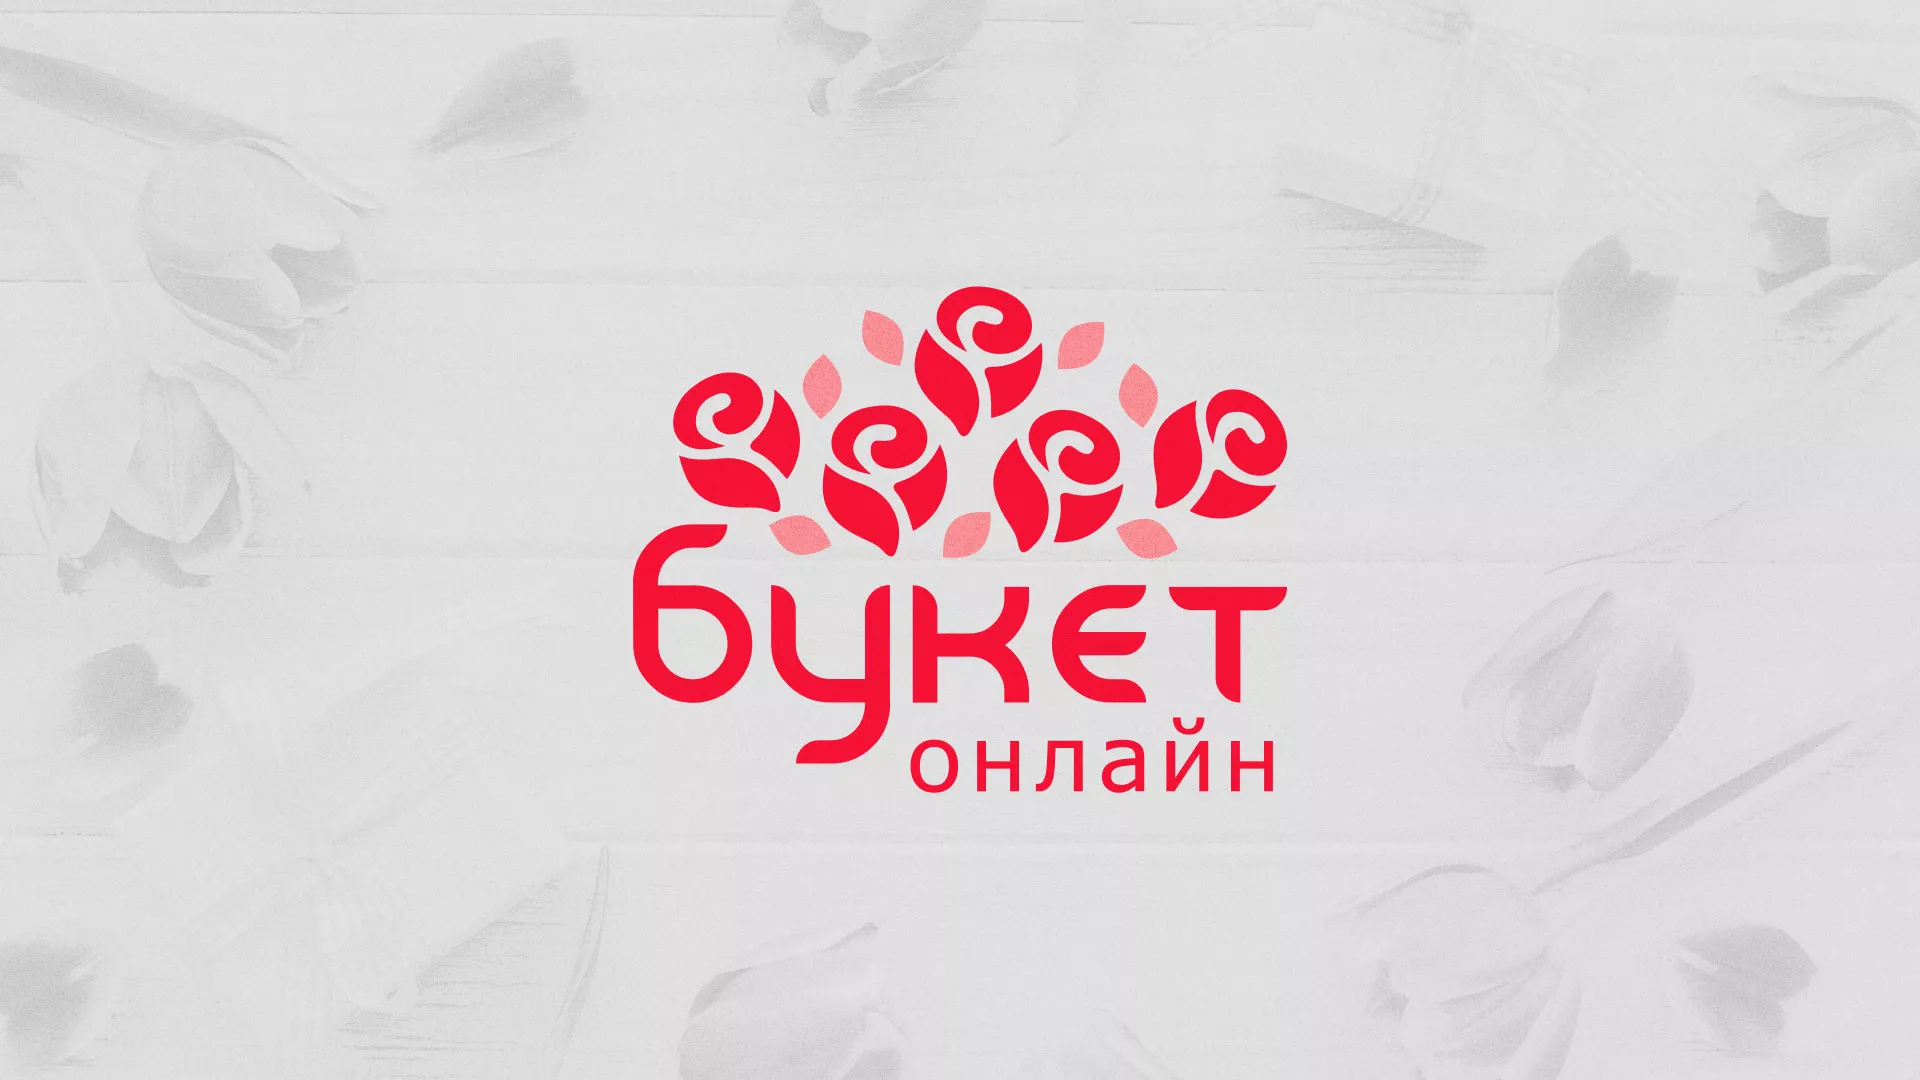 Создание интернет-магазина «Букет-онлайн» по цветам в Торопце